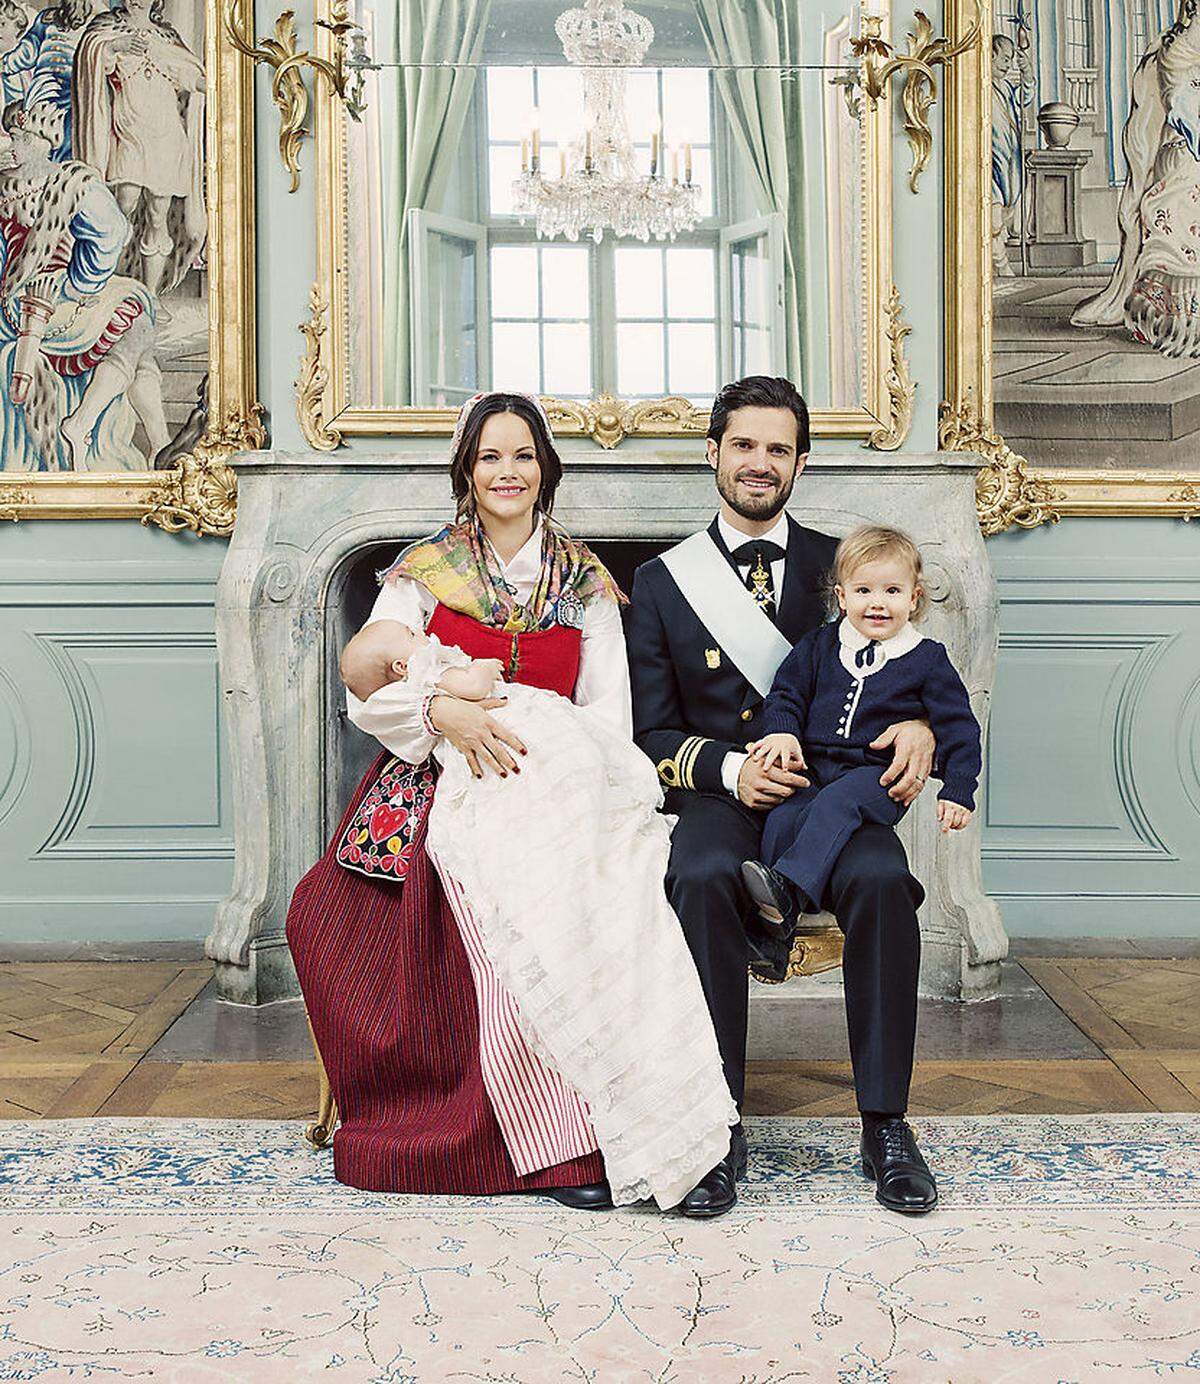 2017 - nur ein Jahr nach der Geburt ihres ersten Kindes Prinz Alexander - hatte der Königshof die zweite Schwangerschaft der Prinzessin verkündet. Im August kam dann Prinz Gabriel zur Welt, im Dezember wurde er getauft. Wenn die Familie in dem Tempo weitermacht, dürfte man eher früher als später mit Neuigkeiten rechnen.